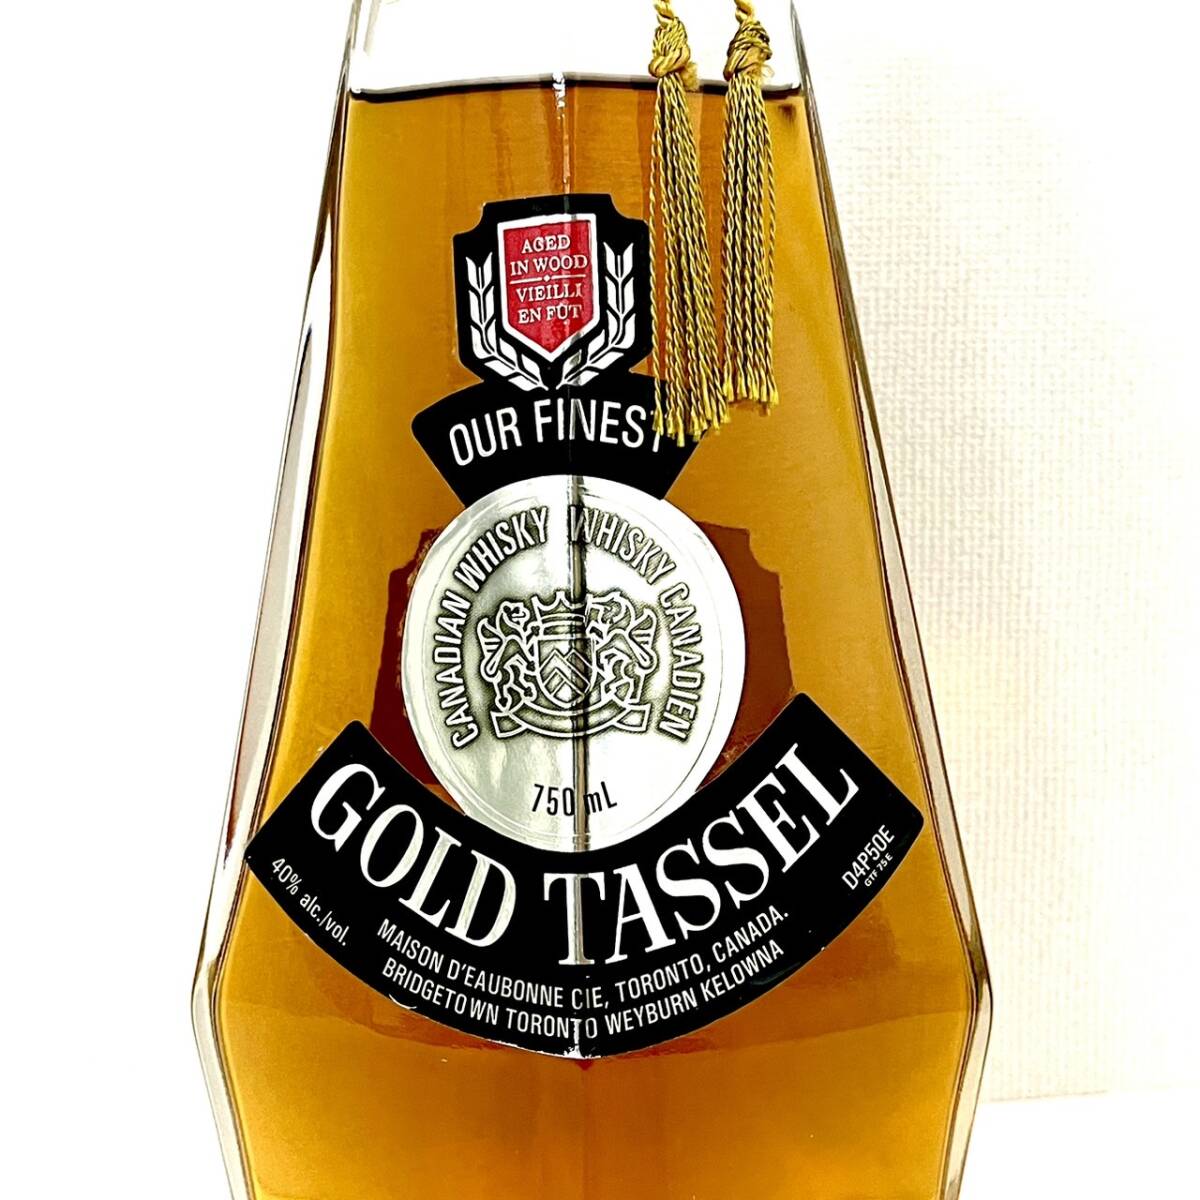 *GOLD TASSEL WHISKY Gold tassel whisky 40% 750ml not yet . plug old sake *